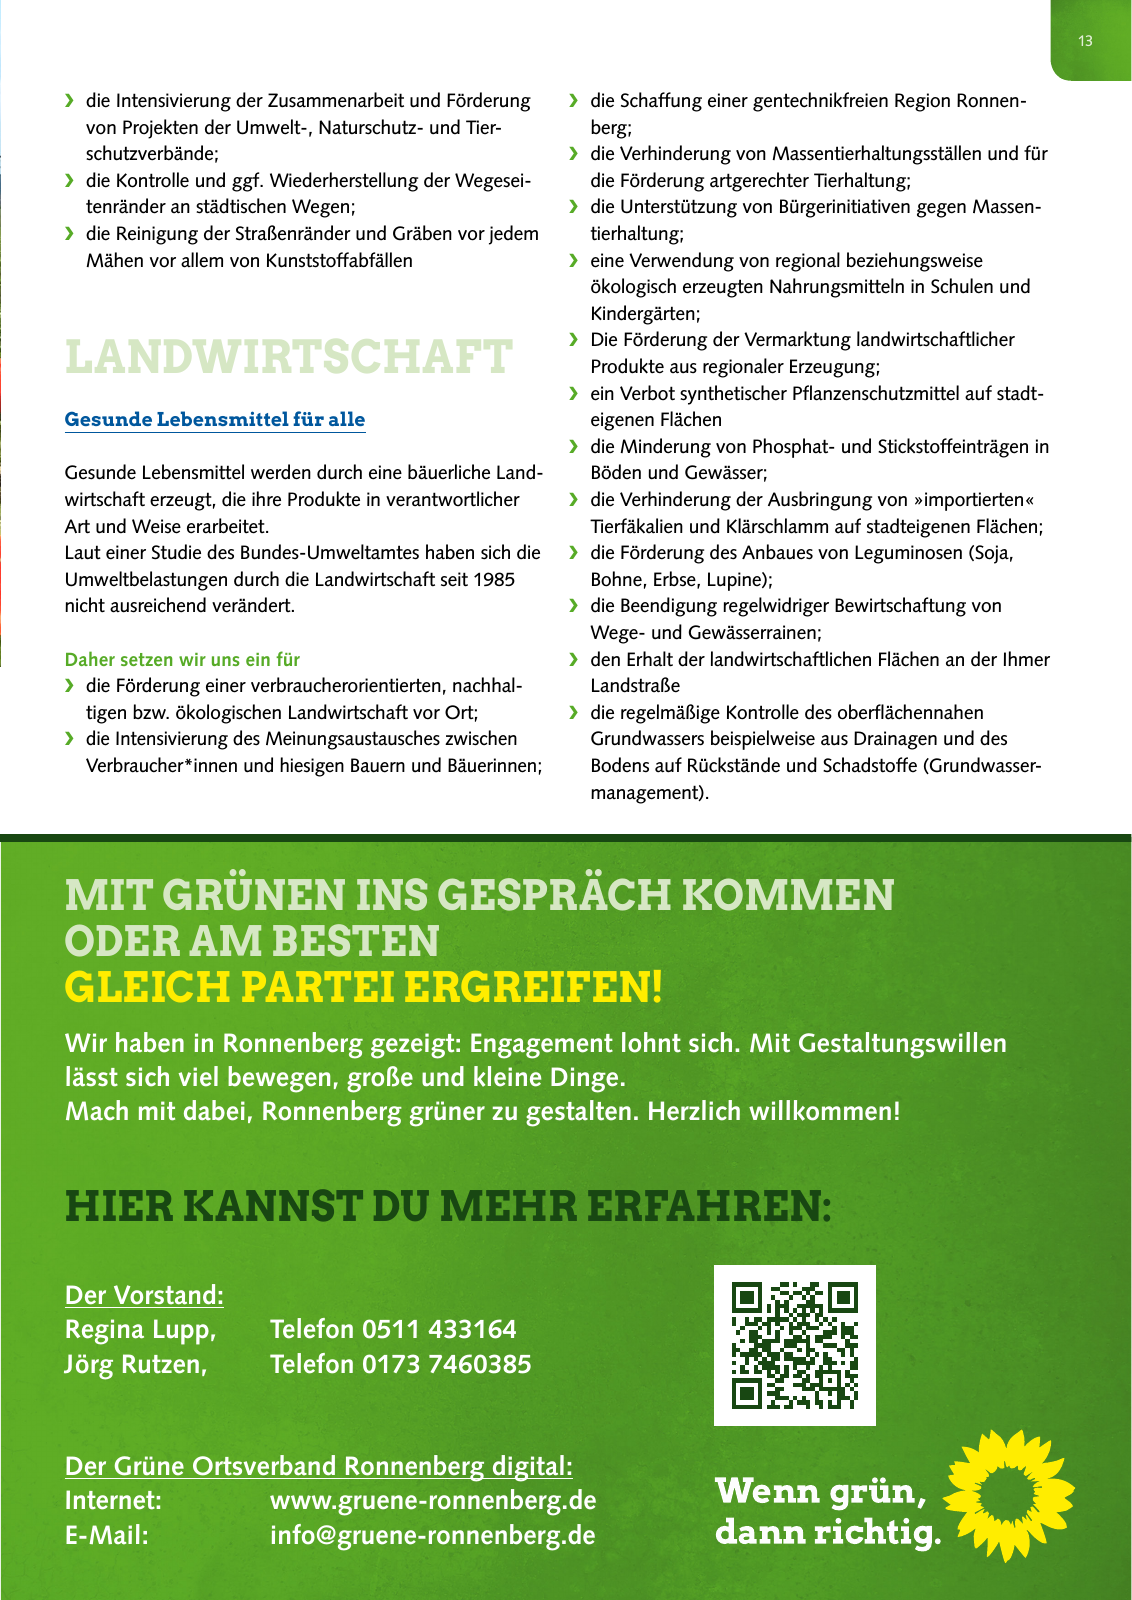 Vorschau Grüne Ronnenberg: Wahlprogramm 2016 Seite 13